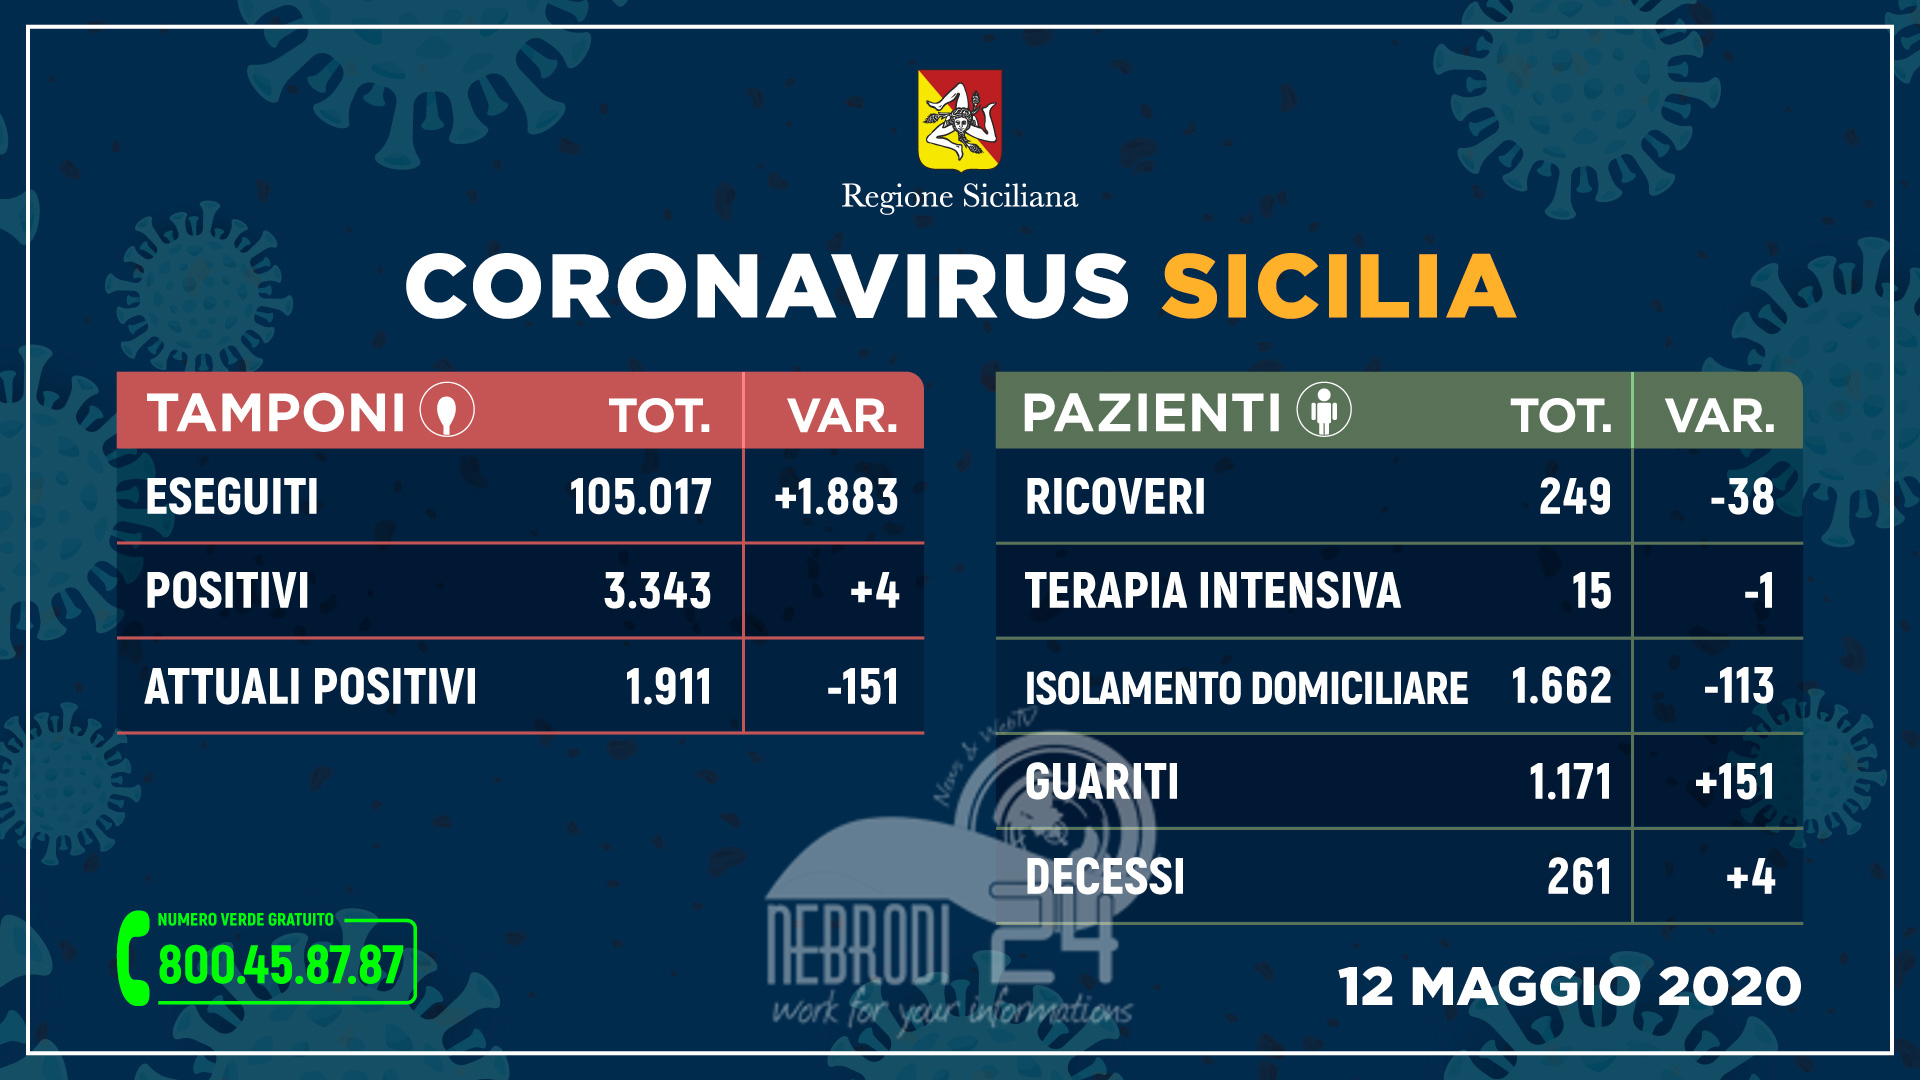 Coronavirus: in Sicilia sempre meno ricoveri e più guariti, 4 nuovi casi